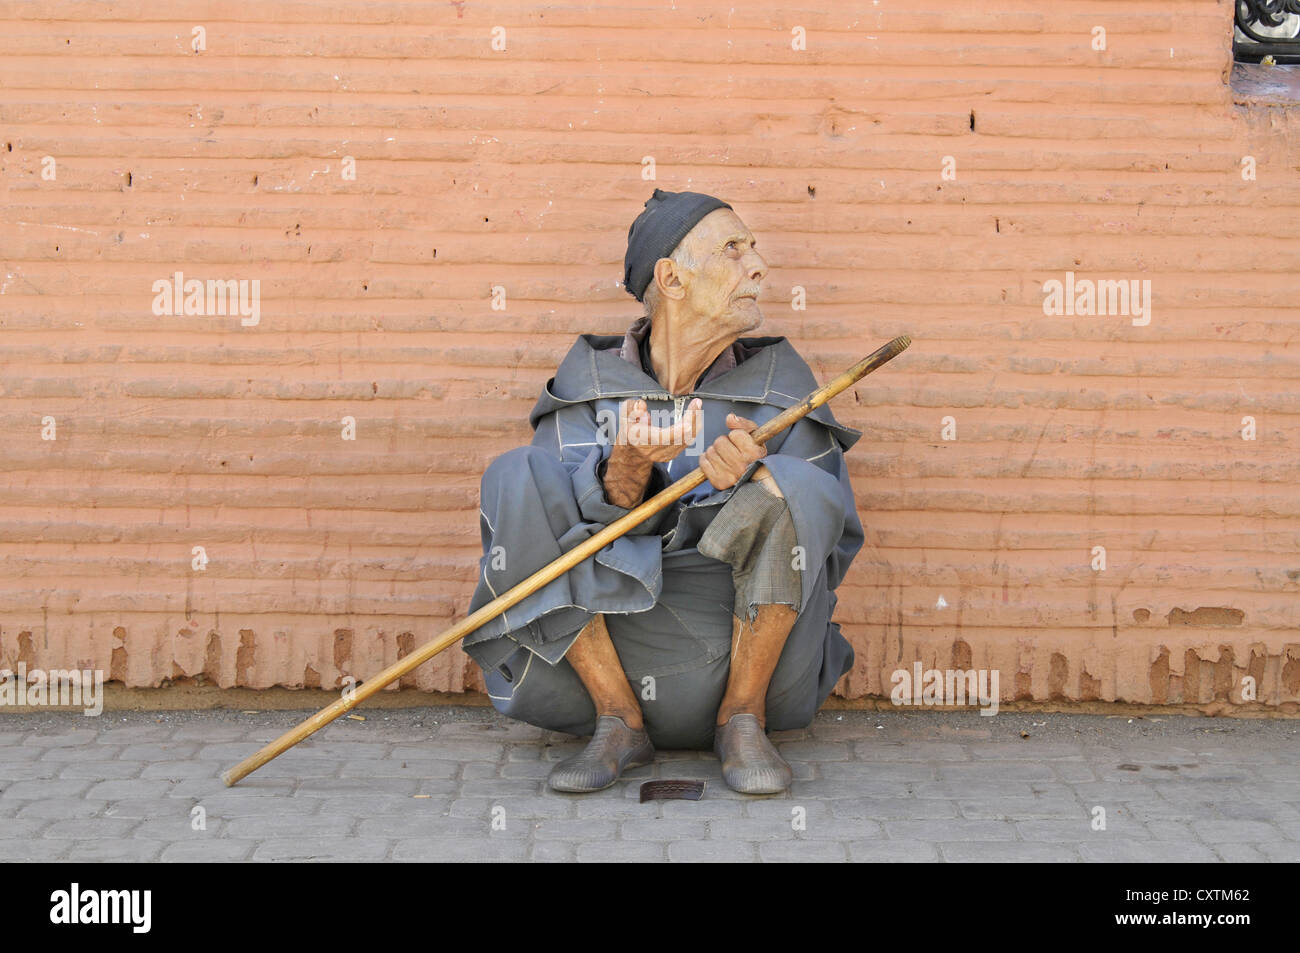 A street beggar in the old Medina centre of Marrakech, Morroco Stock Photo